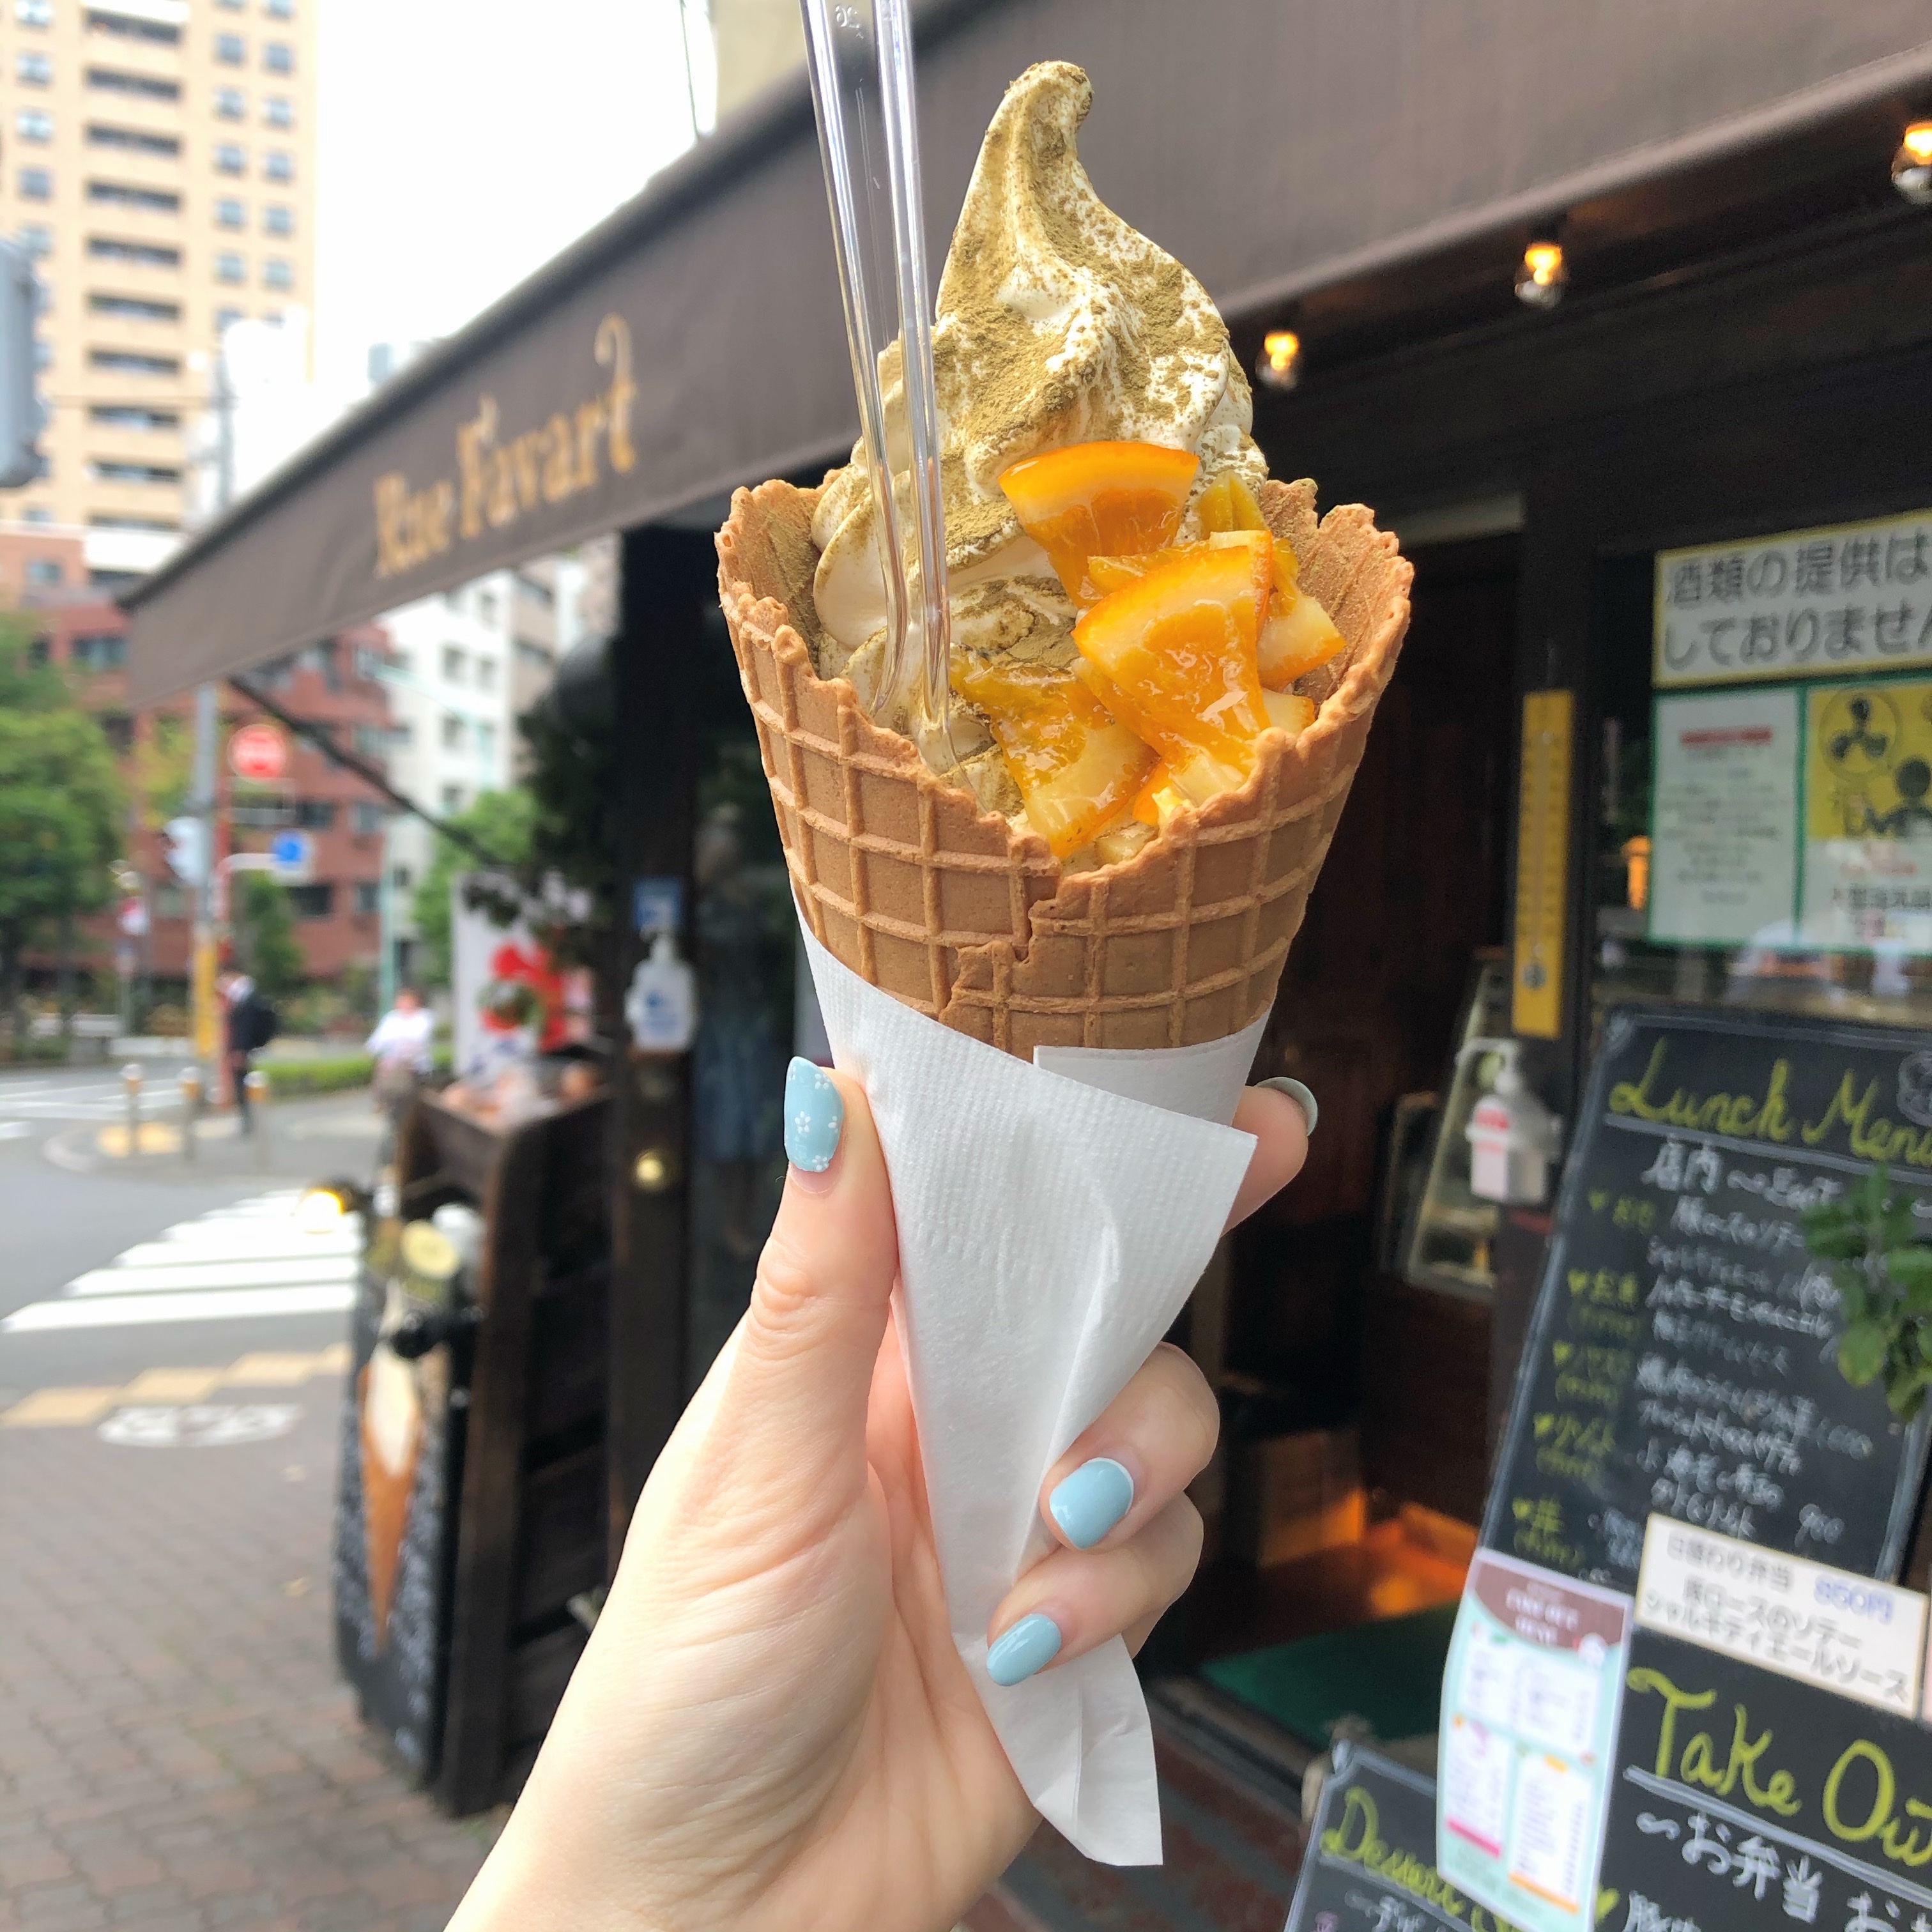 ソフカツ | ソフトクリームマニアの全国ソフトクリーム食べ歩きブログ | 恵比寿『Rue Favert リュ・ファヴァー』ほうじ茶オレンジ